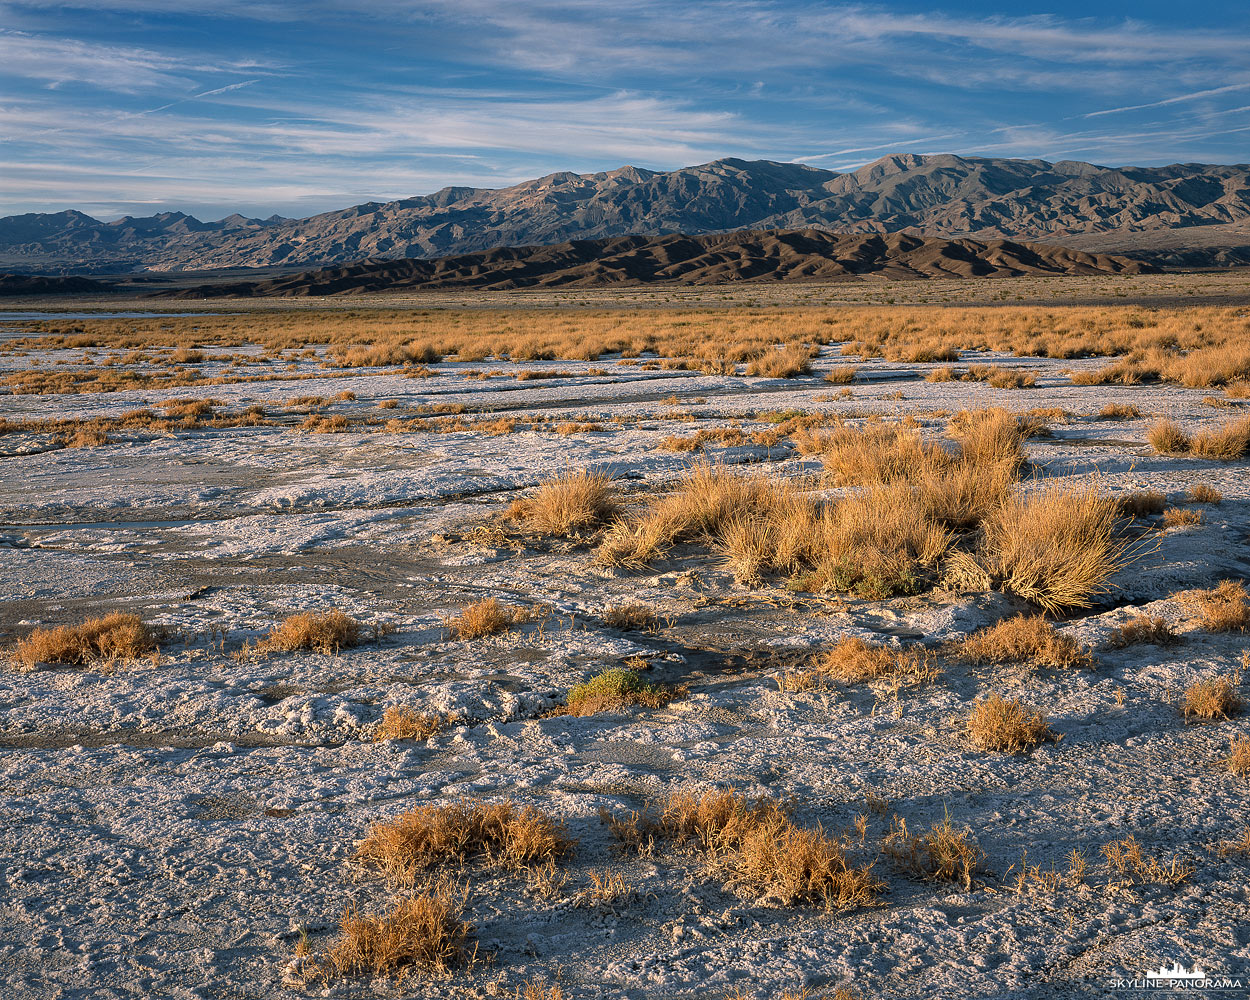 Sehenswertes aus dem Death Valley Nationalpark in Kalifornien - Ein paar Meilen hinter Furnace Creek, in östlicher Richtung, erstreckt sich die Salzebene, hier findet man häufig große Flächen an Salzgras in Verbindung mit einigen Abflussrinnen und kleinen Salzseen, in denen sich etwas Salzwasser aus den umliegenden Bergen gesammelt hat. Auf diesem 4x5" Großformatbild habe ich das goldgelbe Salzgras, bei tiefstehender Sonne zum Sonnenuntergang, als Motiv für mich entdeckt.